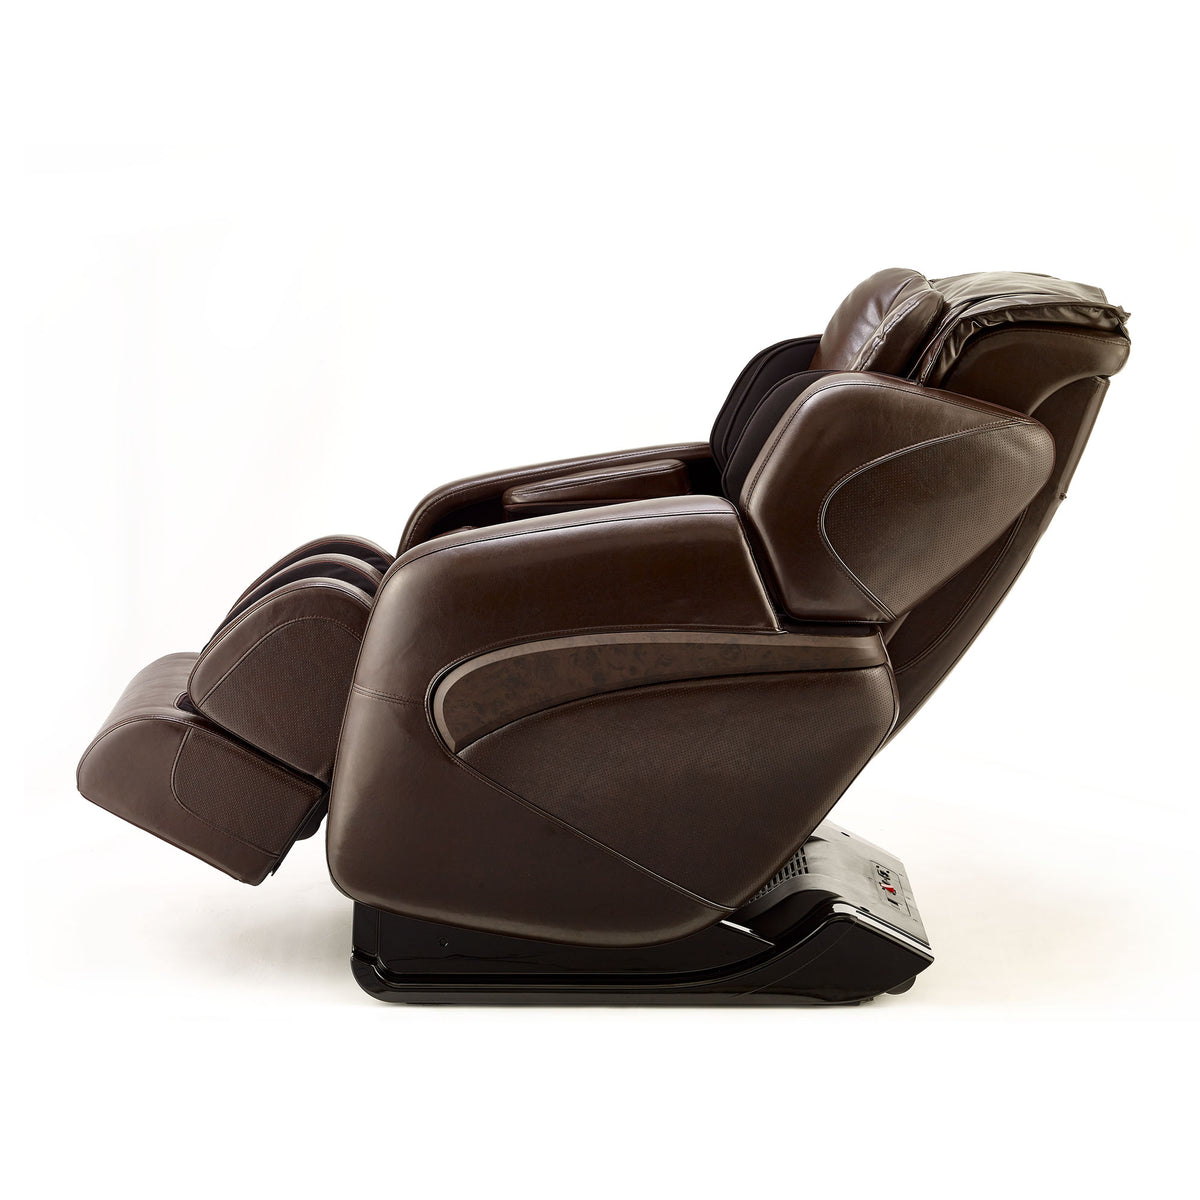 Inner Balance Wellness Jin Deluxe Massage Chair